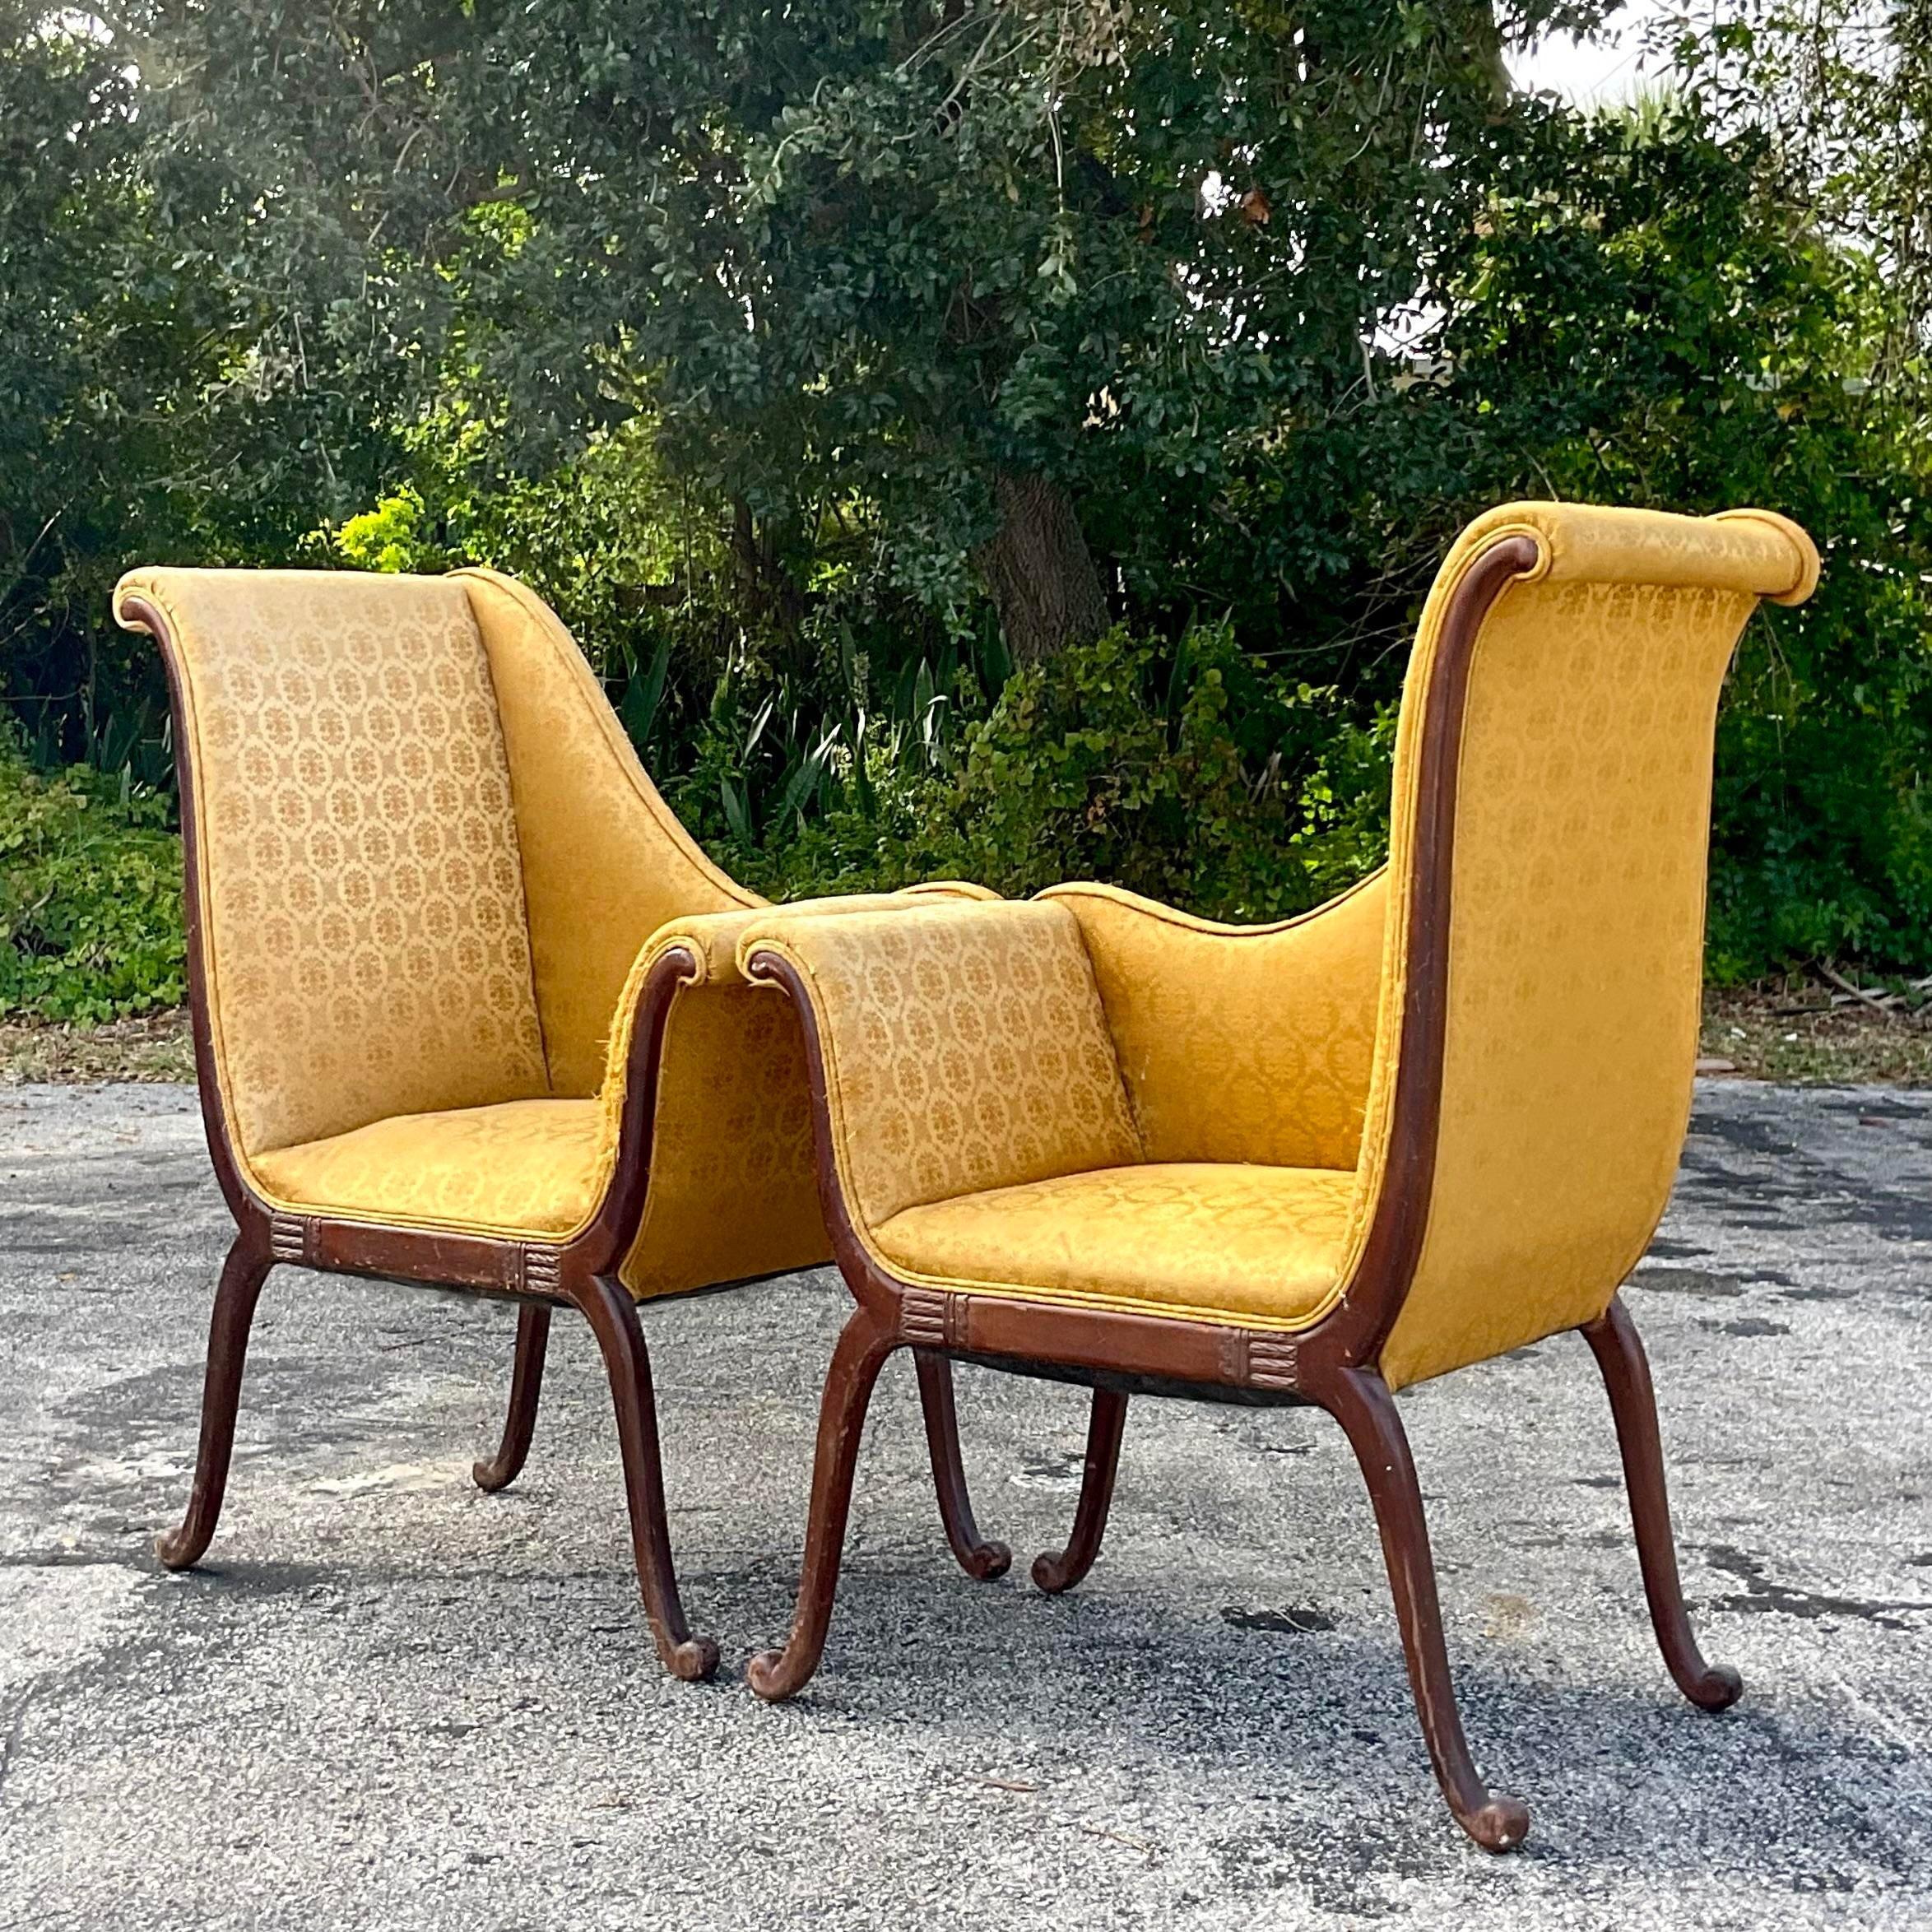 Un fantastique fauteuil de salon Regency vintage. Une conception chic de Parker Deux avec de magnifiques détails sculptés à la main. La structure de ces chaises est excellente, mais elles ont besoin d'être retapissées. Mais une fois réimaginées,